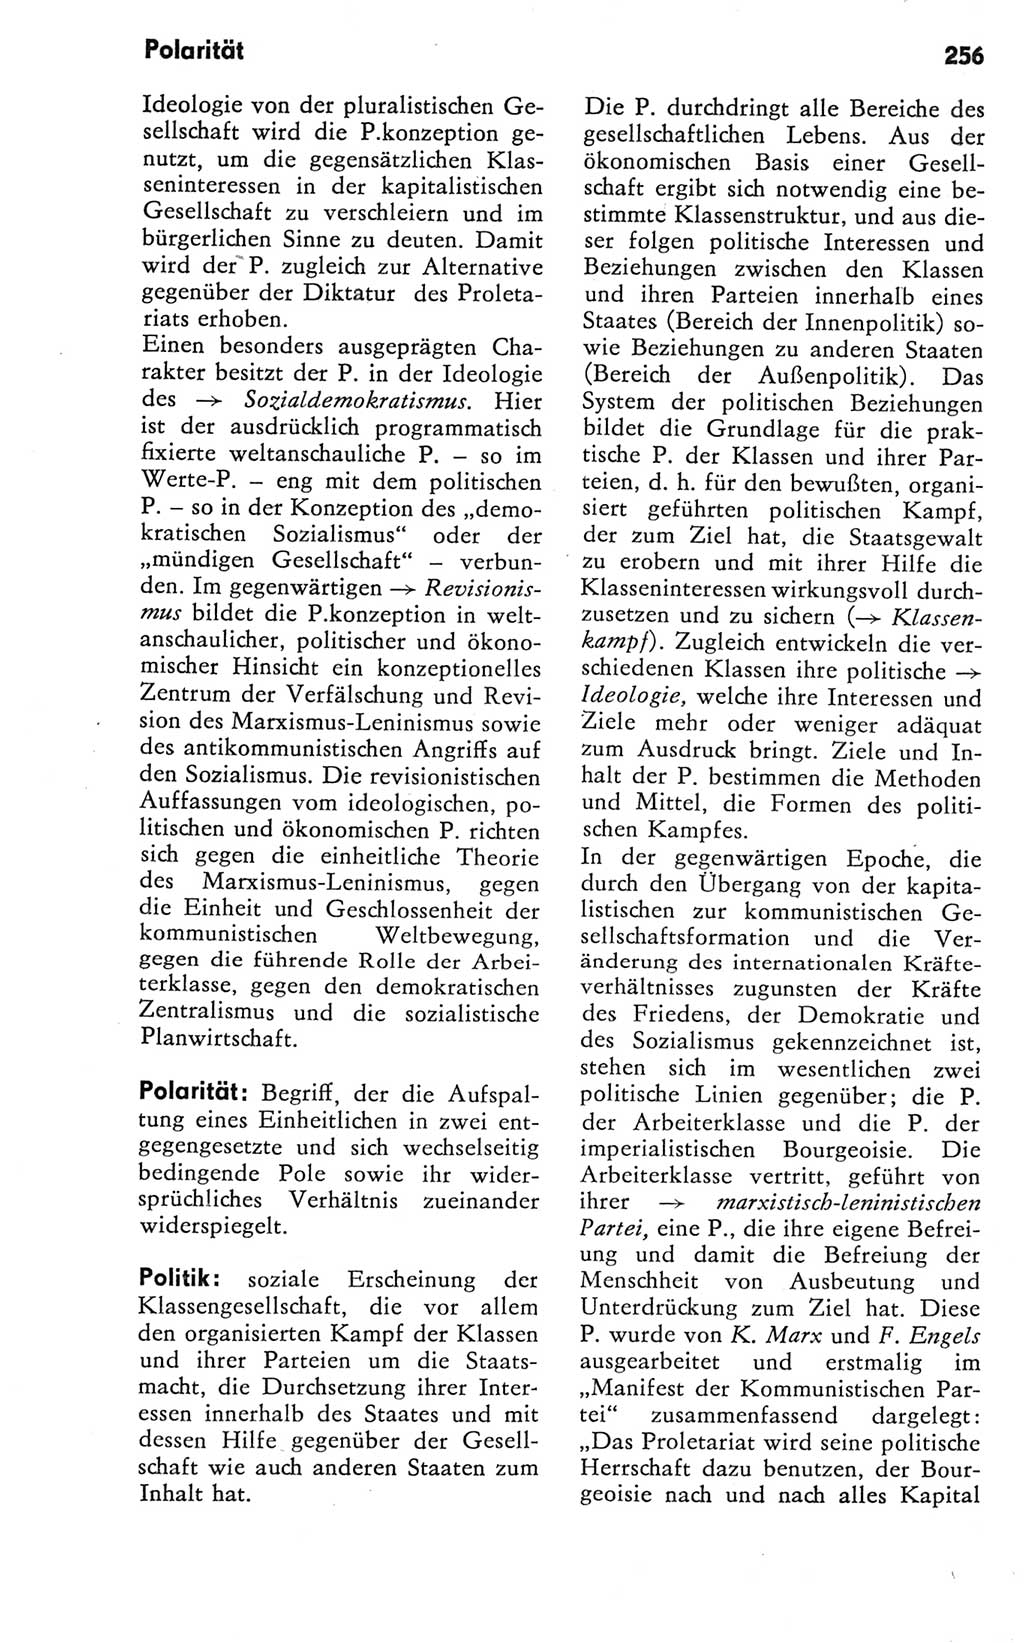 Kleines Wörterbuch der marxistisch-leninistischen Philosophie [Deutsche Demokratische Republik (DDR)] 1981, Seite 256 (Kl. Wb. ML Phil. DDR 1981, S. 256)